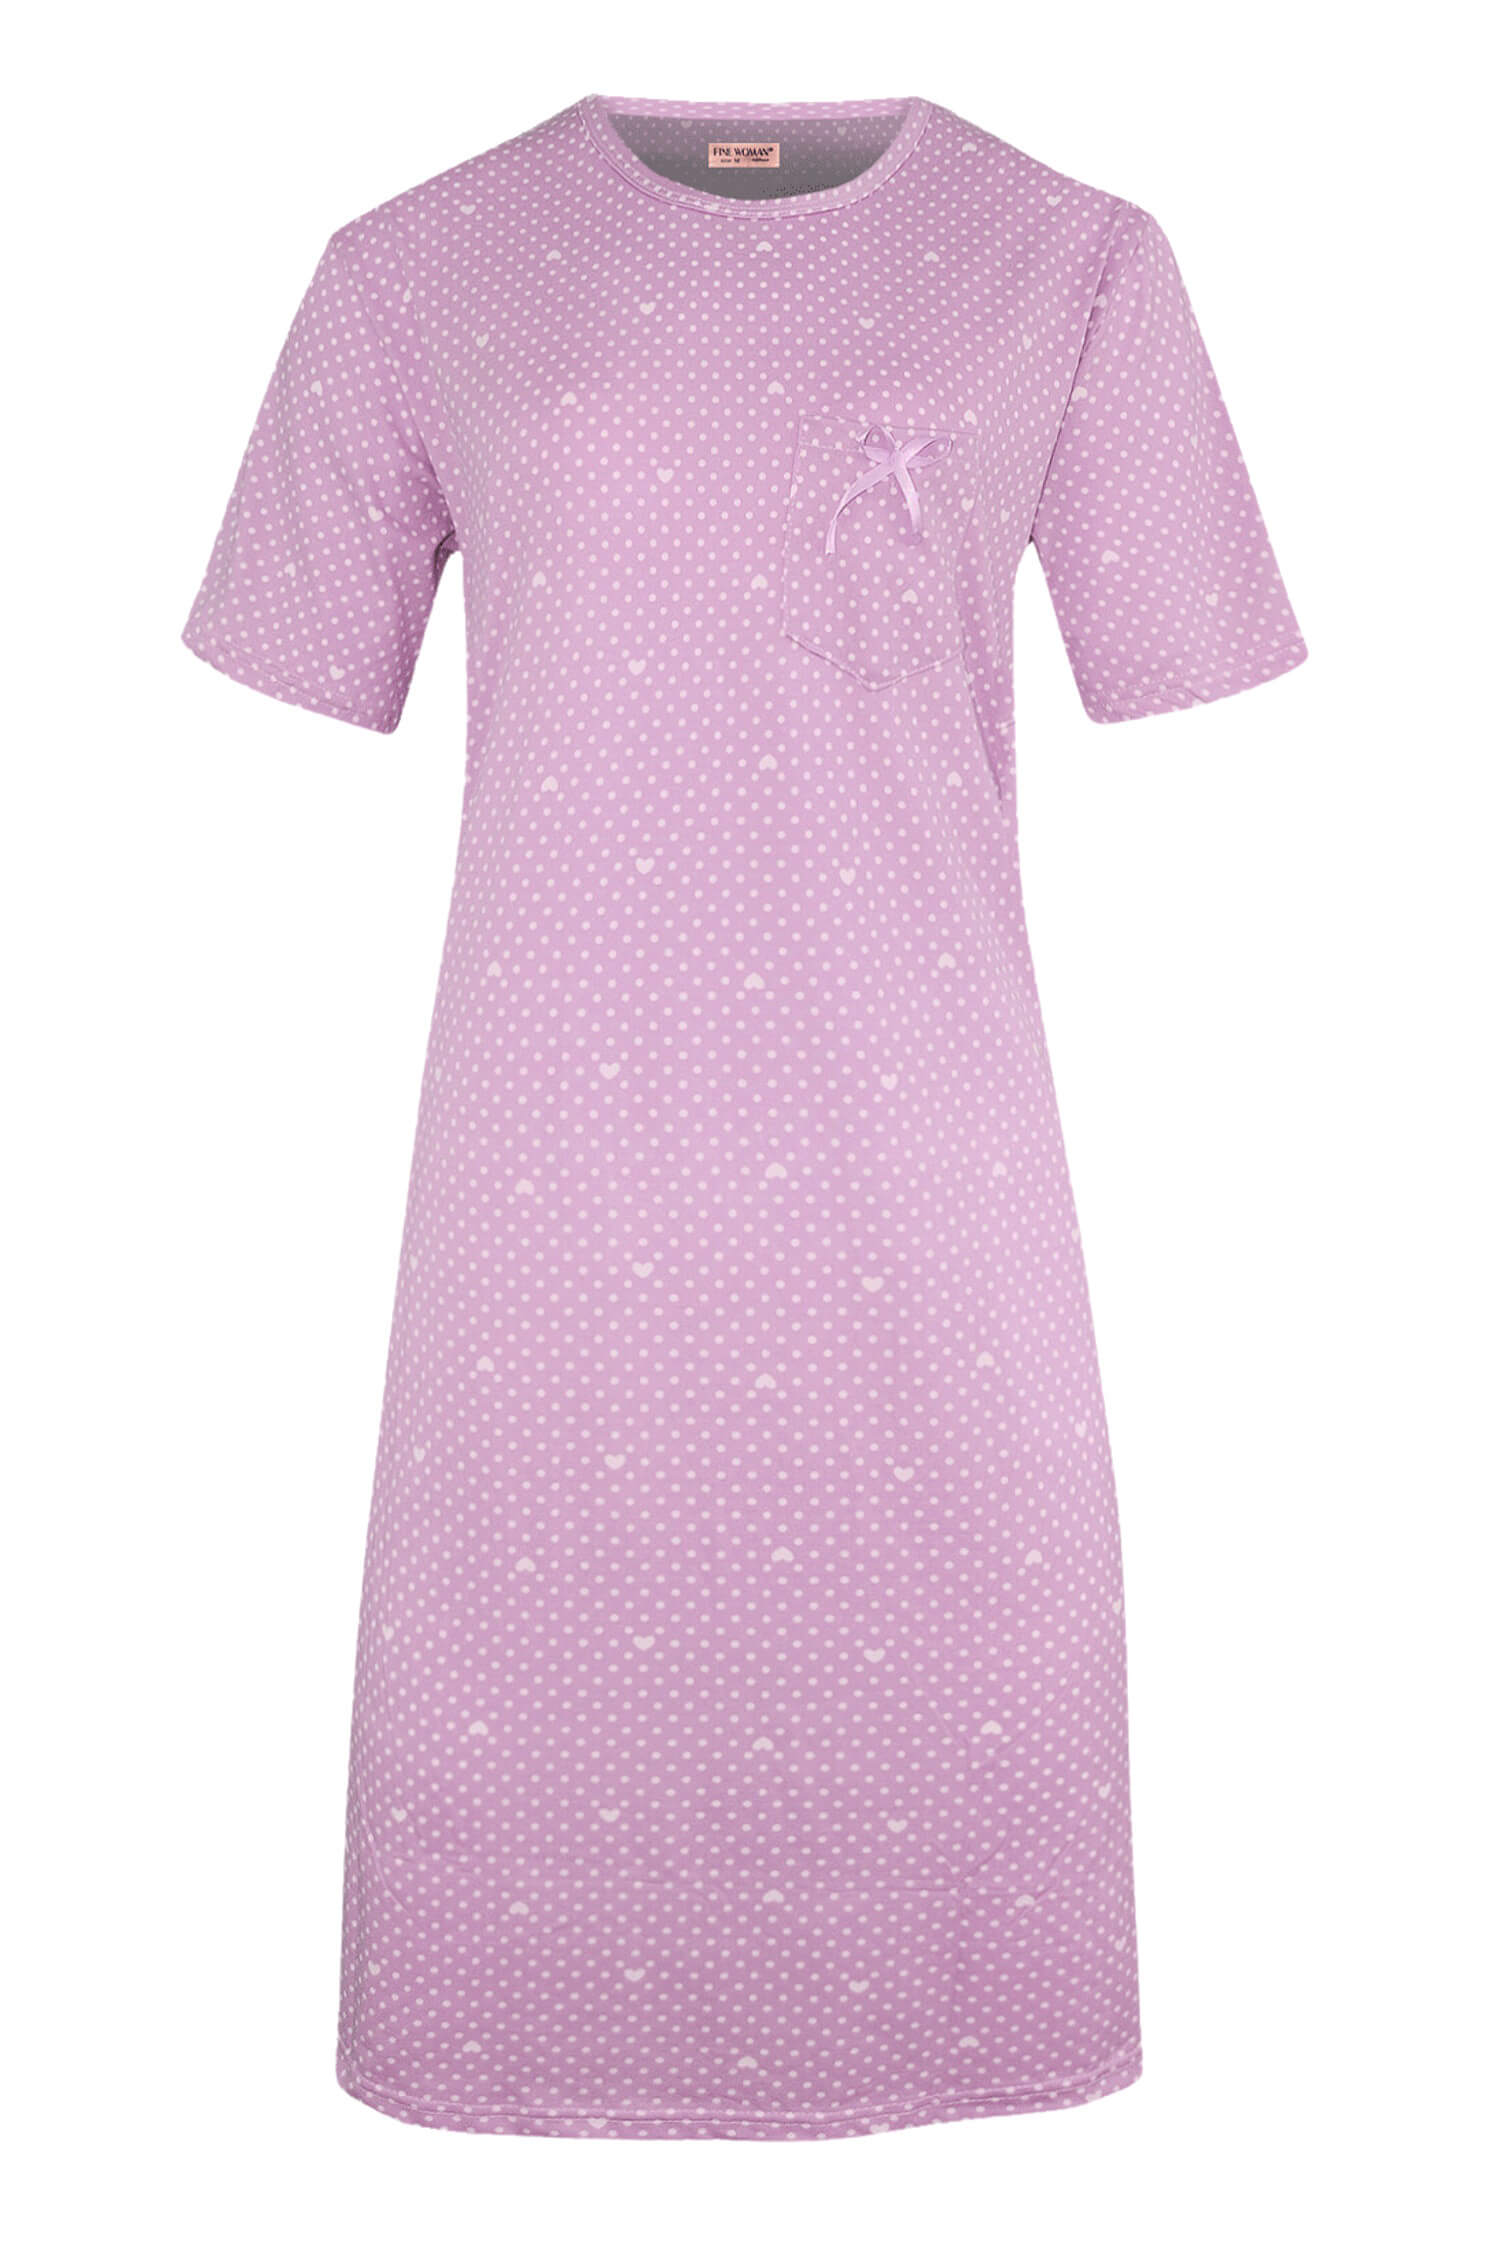 Danuška dámská noční košile s puntíky 6528 3XL světle fialová